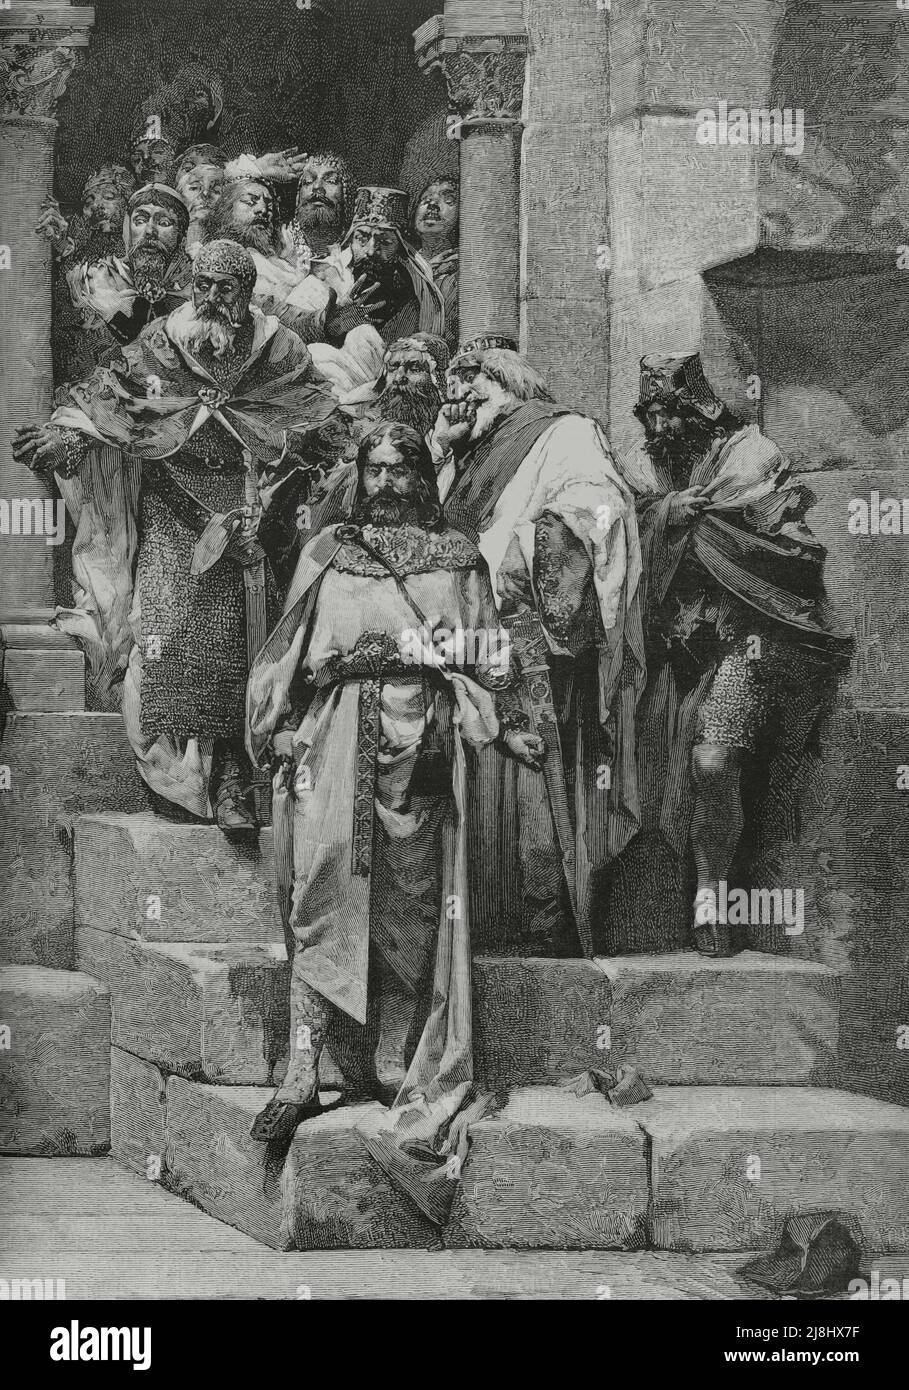 Ramiro II d'Aragon (1086-1157). Roi d'Aragon (1134-1157). Scène représentant la légende de la cloche de Huesca, ou la légende du roi moine. Gravure, 1882. Banque D'Images